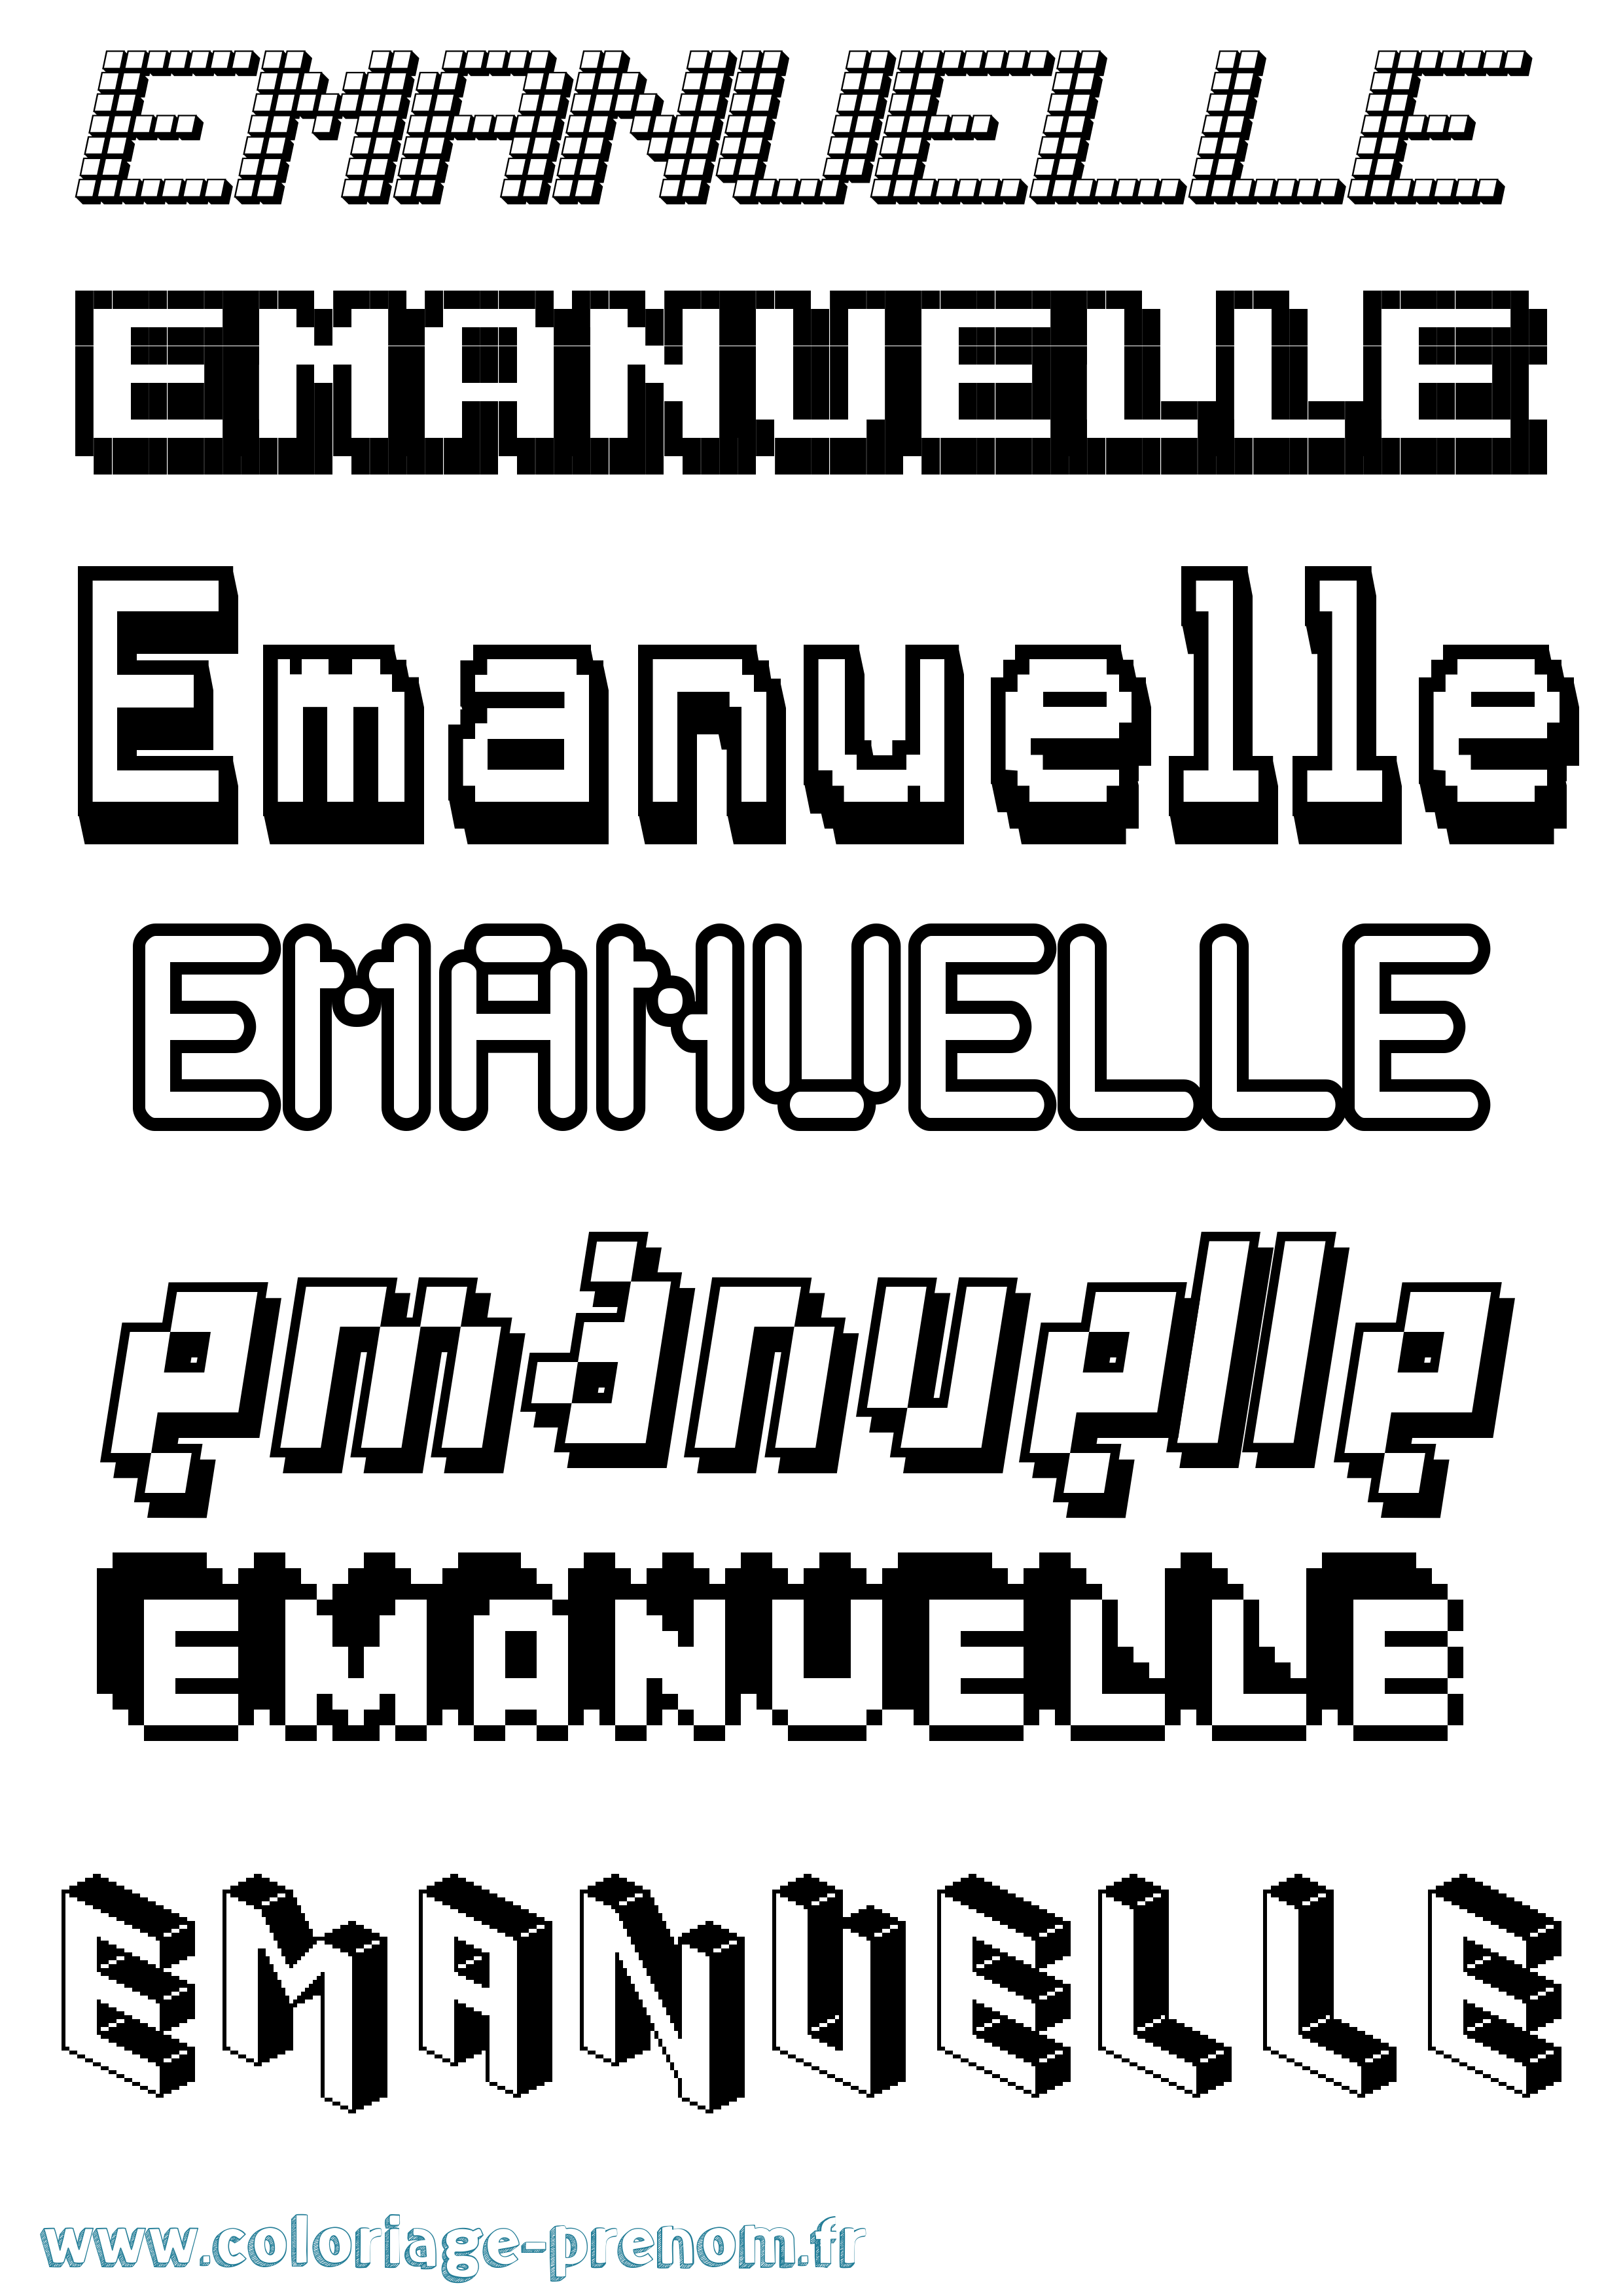 Coloriage prénom Emanuelle Pixel